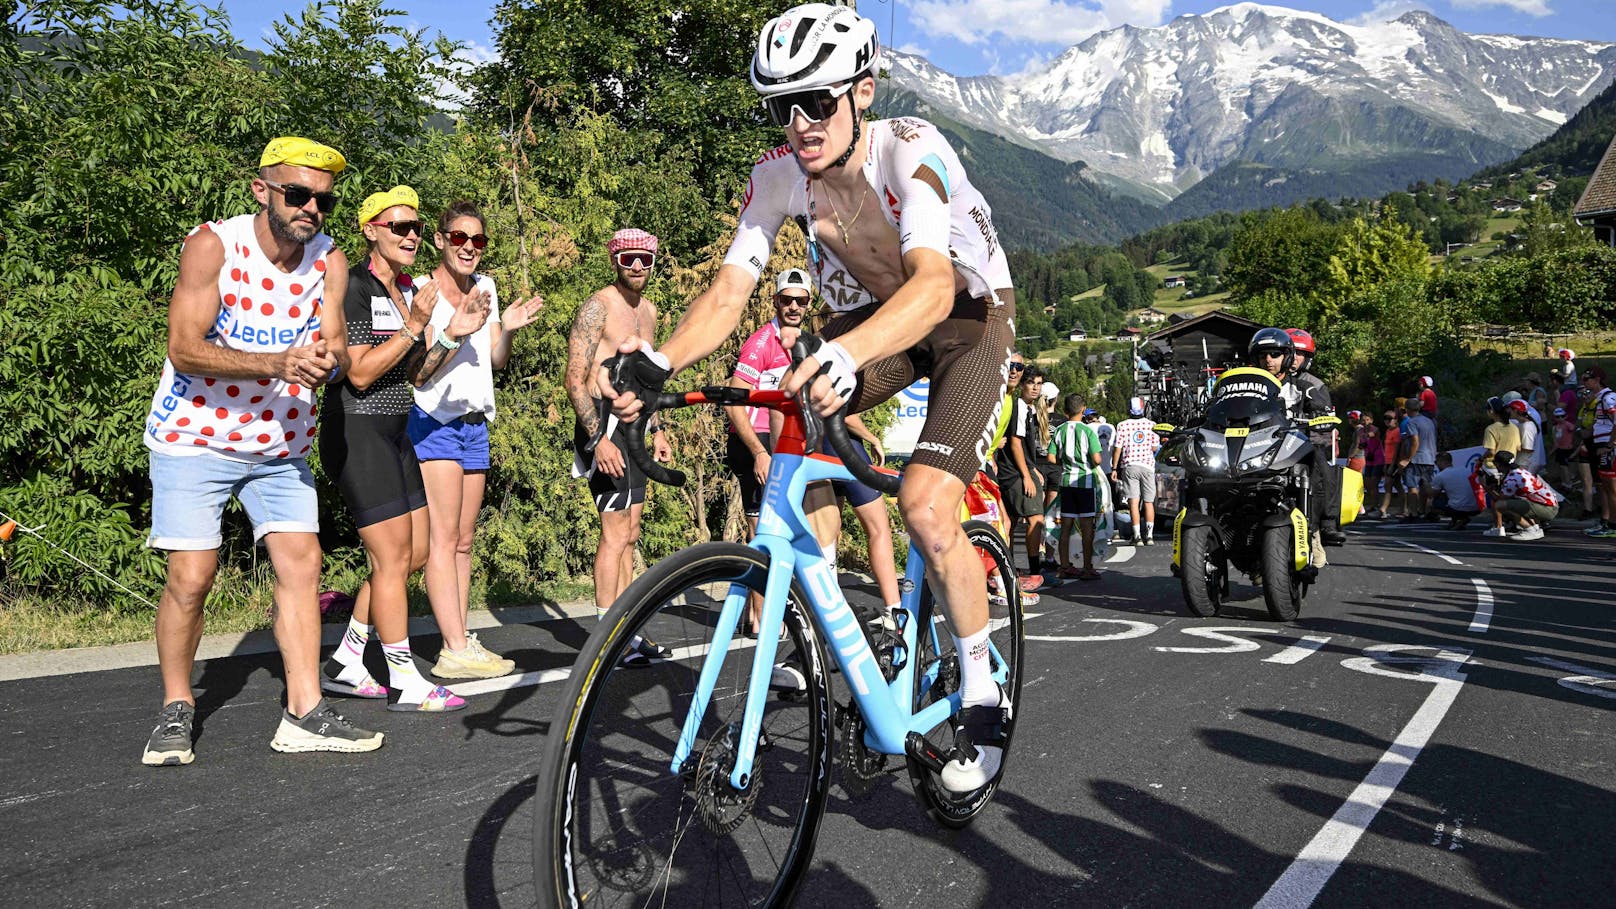 Juni: Die Tour de France verlangt den Rad-Stars wieder alles ab. Gestartet wird am 29. Juni. Das Ziel sehen Gall und Co. erst am 21. Juli.